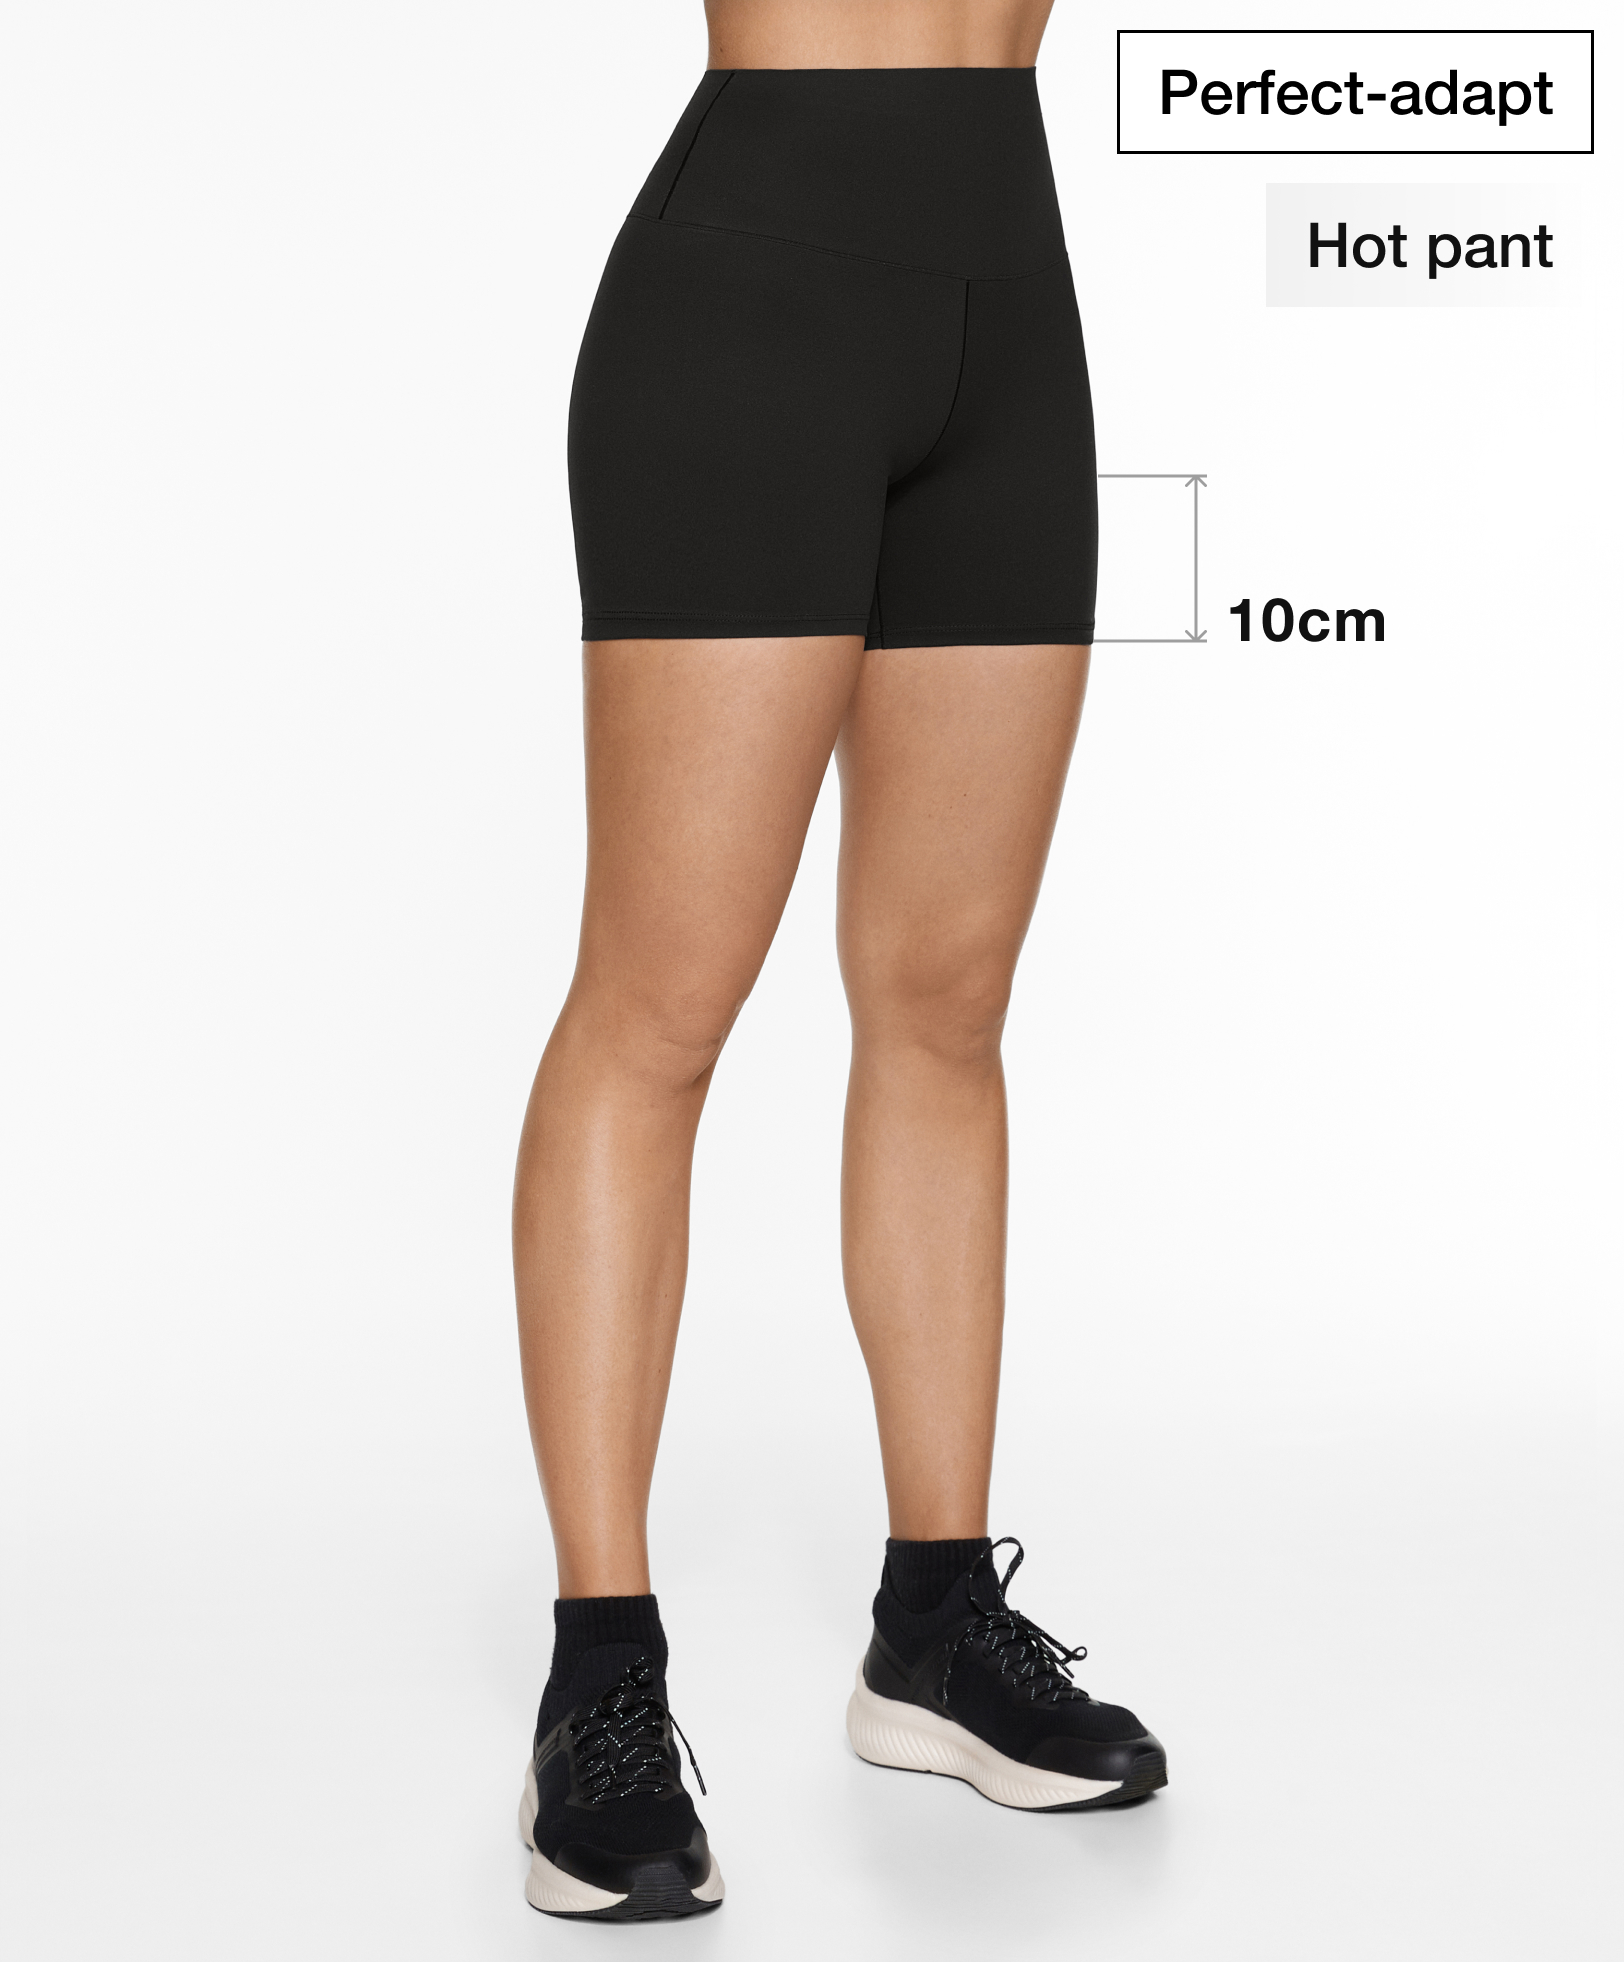 Perfect-adapt high-rise 10cm hot pant leggings